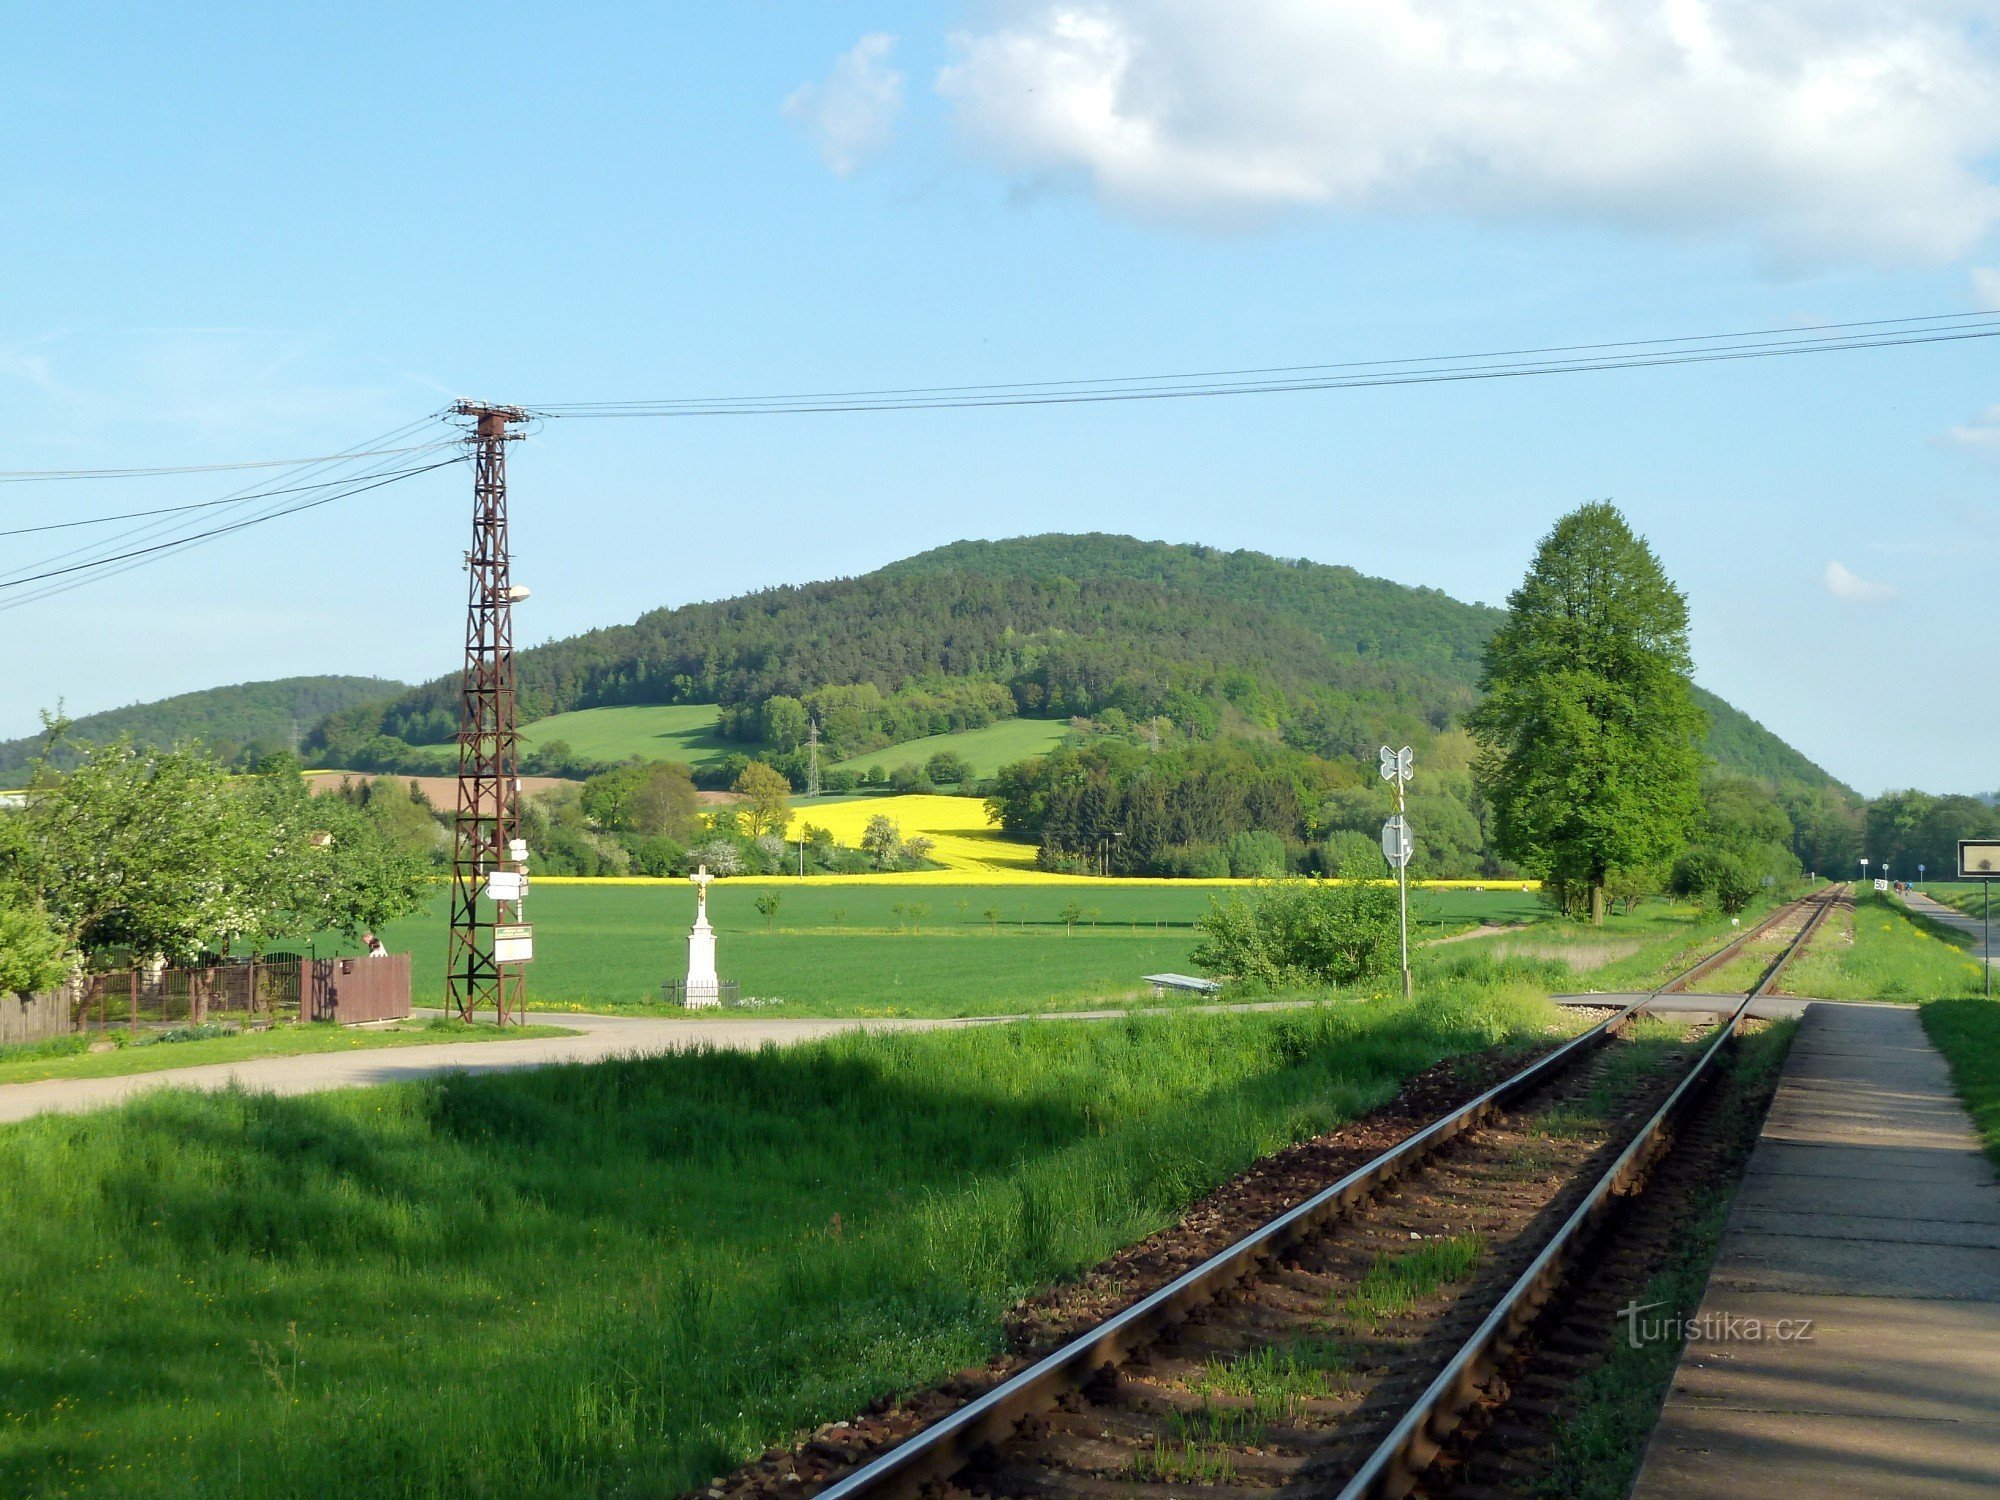 trạm dừng xe lửa - đường ngang trên cột ở phần bên trái của bức ảnh